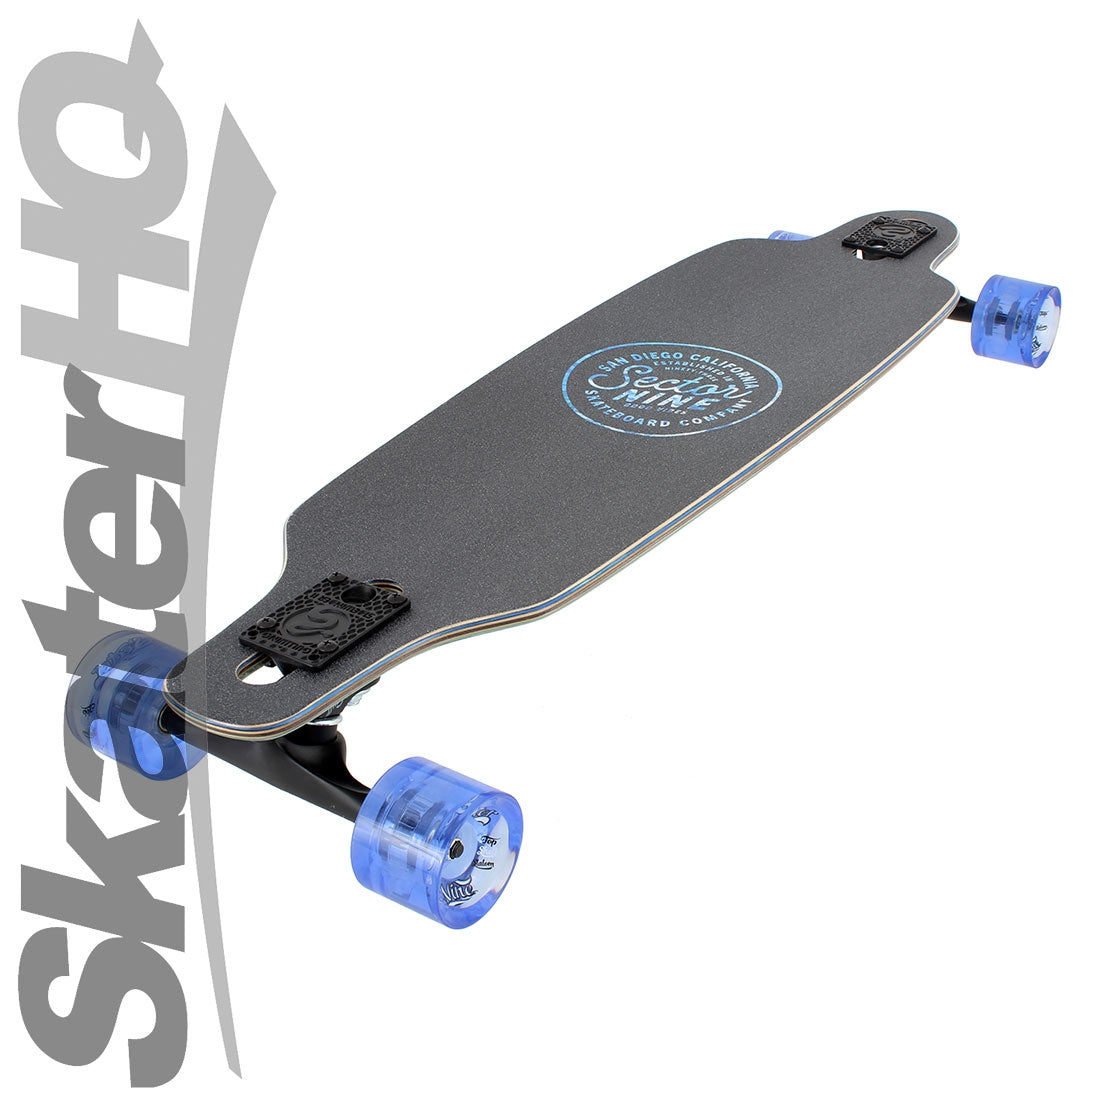 Sector 9 Flux Mini Fractal 34 Complete Skateboard Completes Longboards